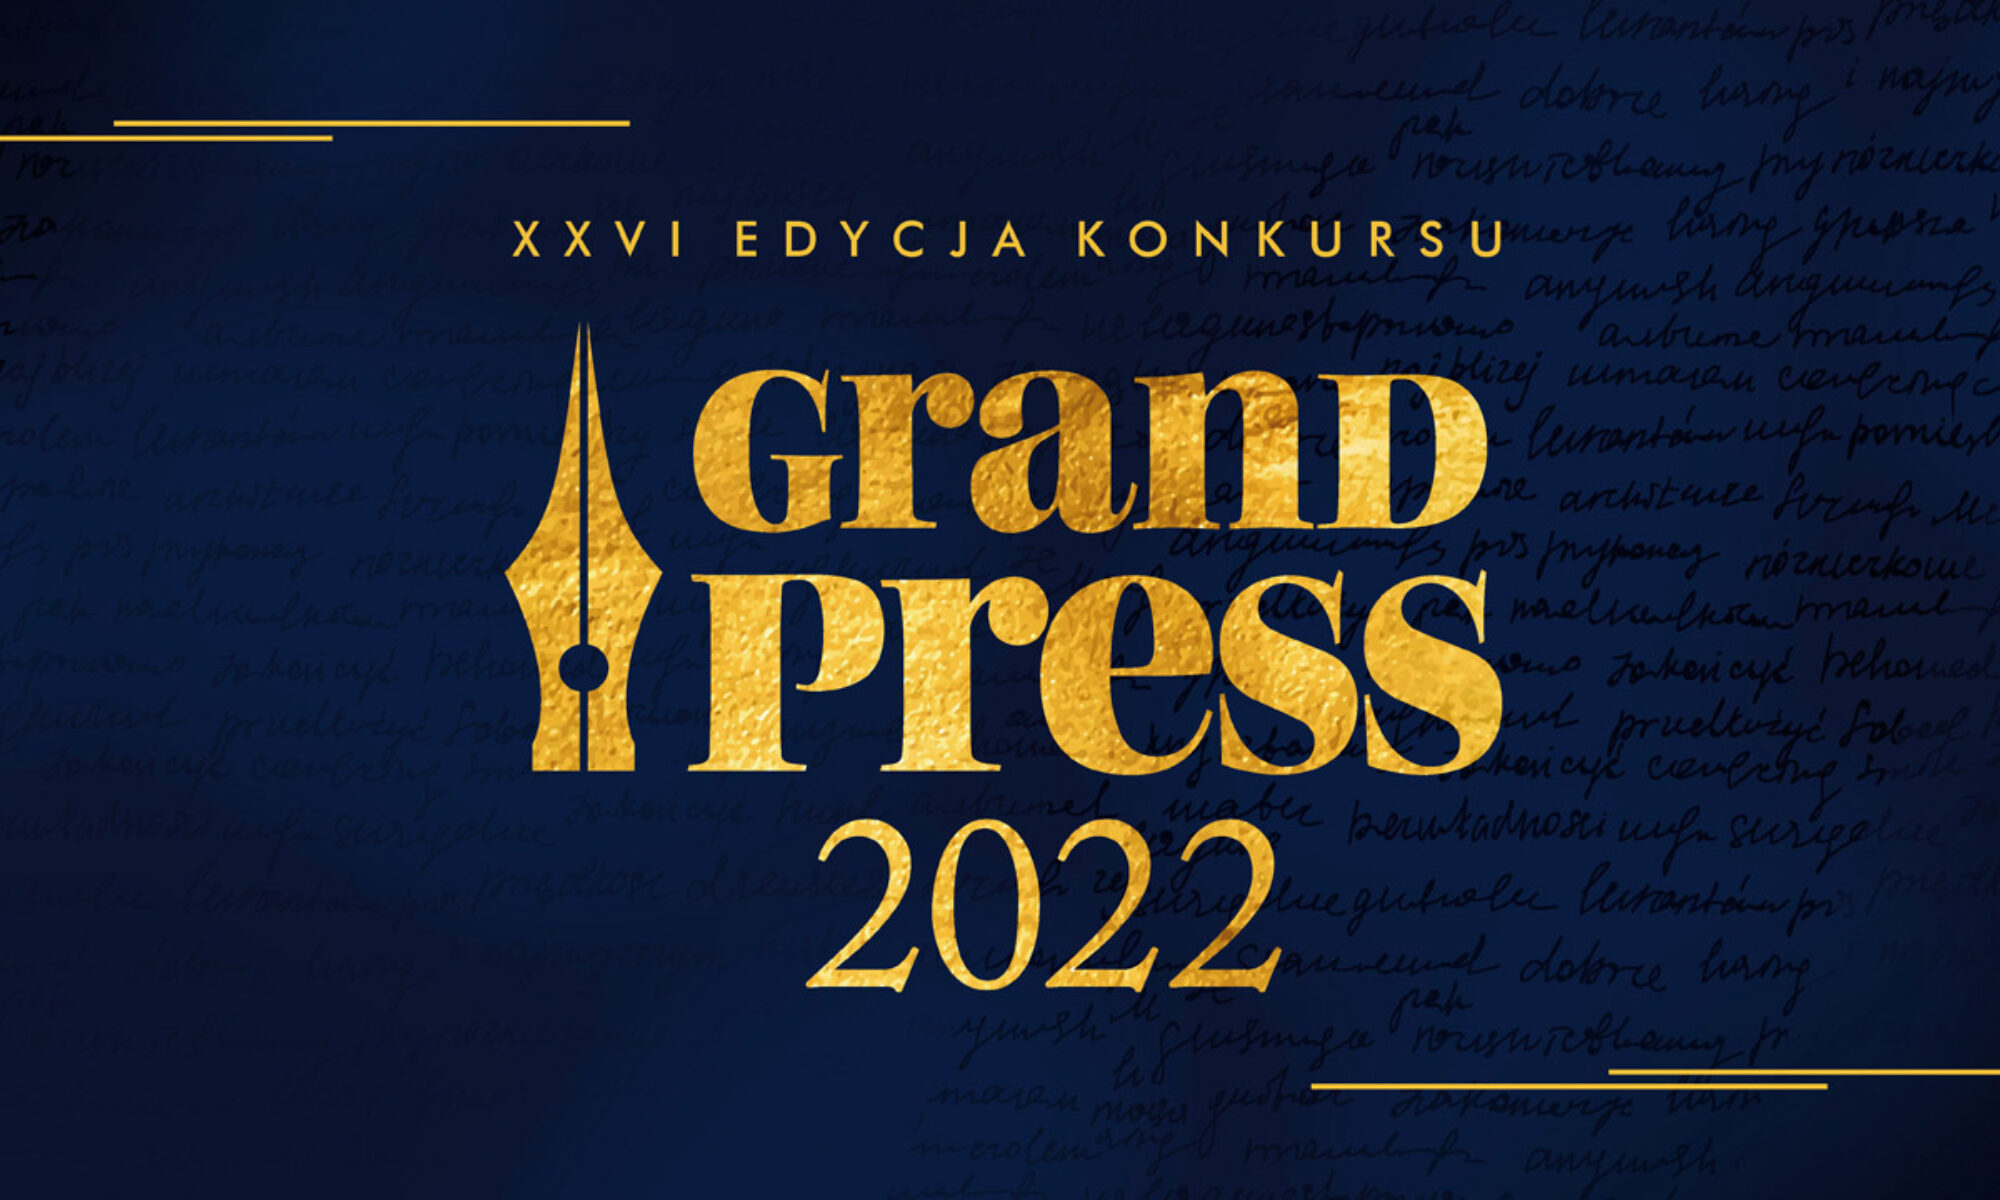 Grand Press